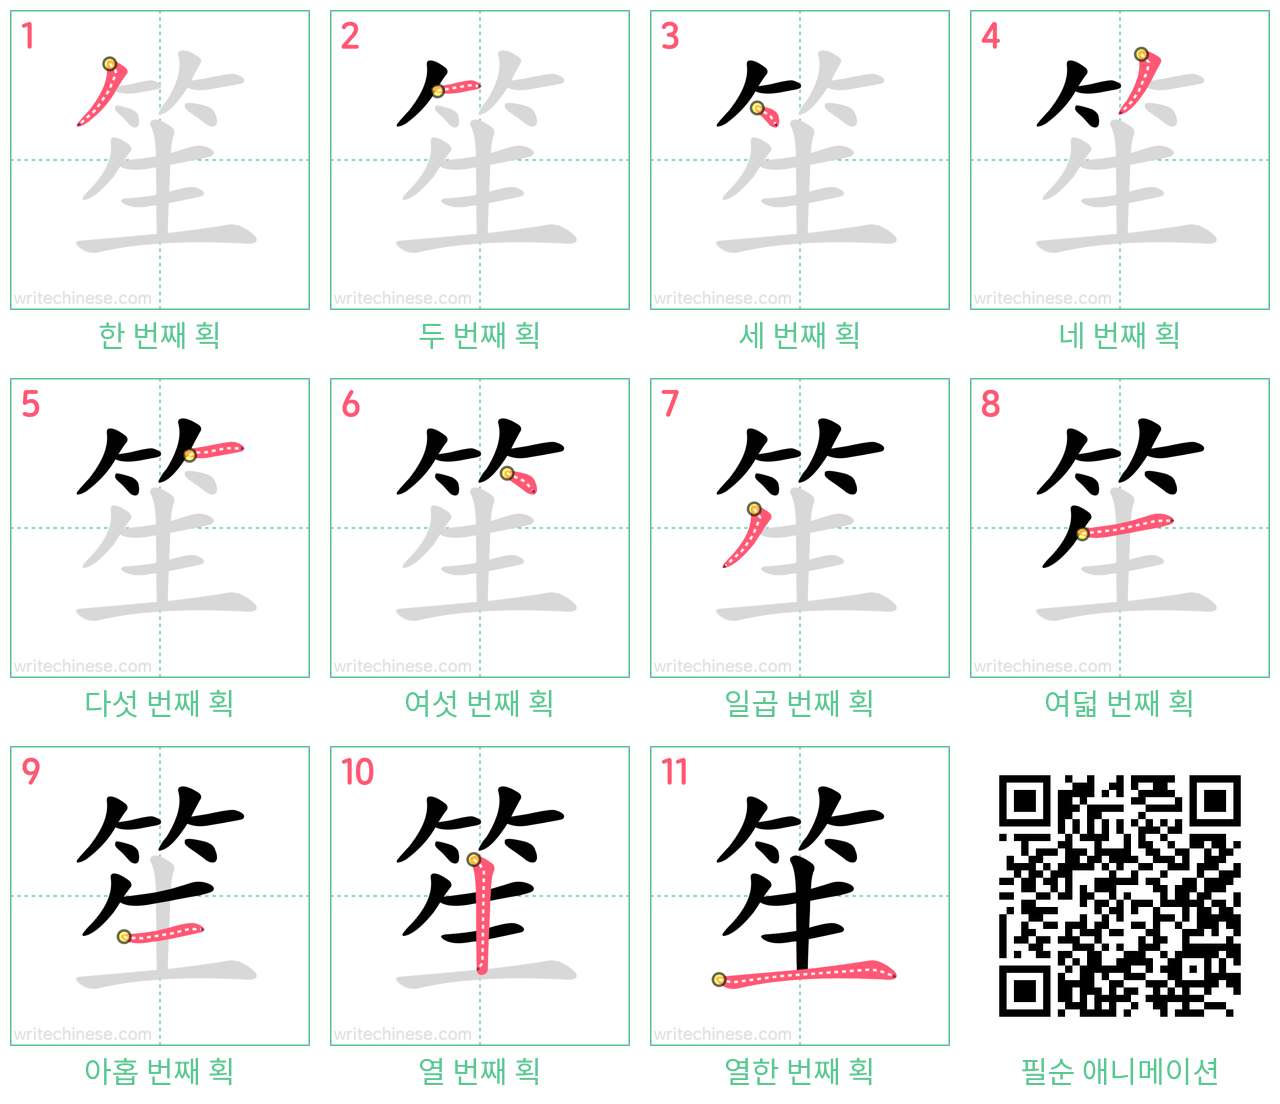 笙 step-by-step stroke order diagrams